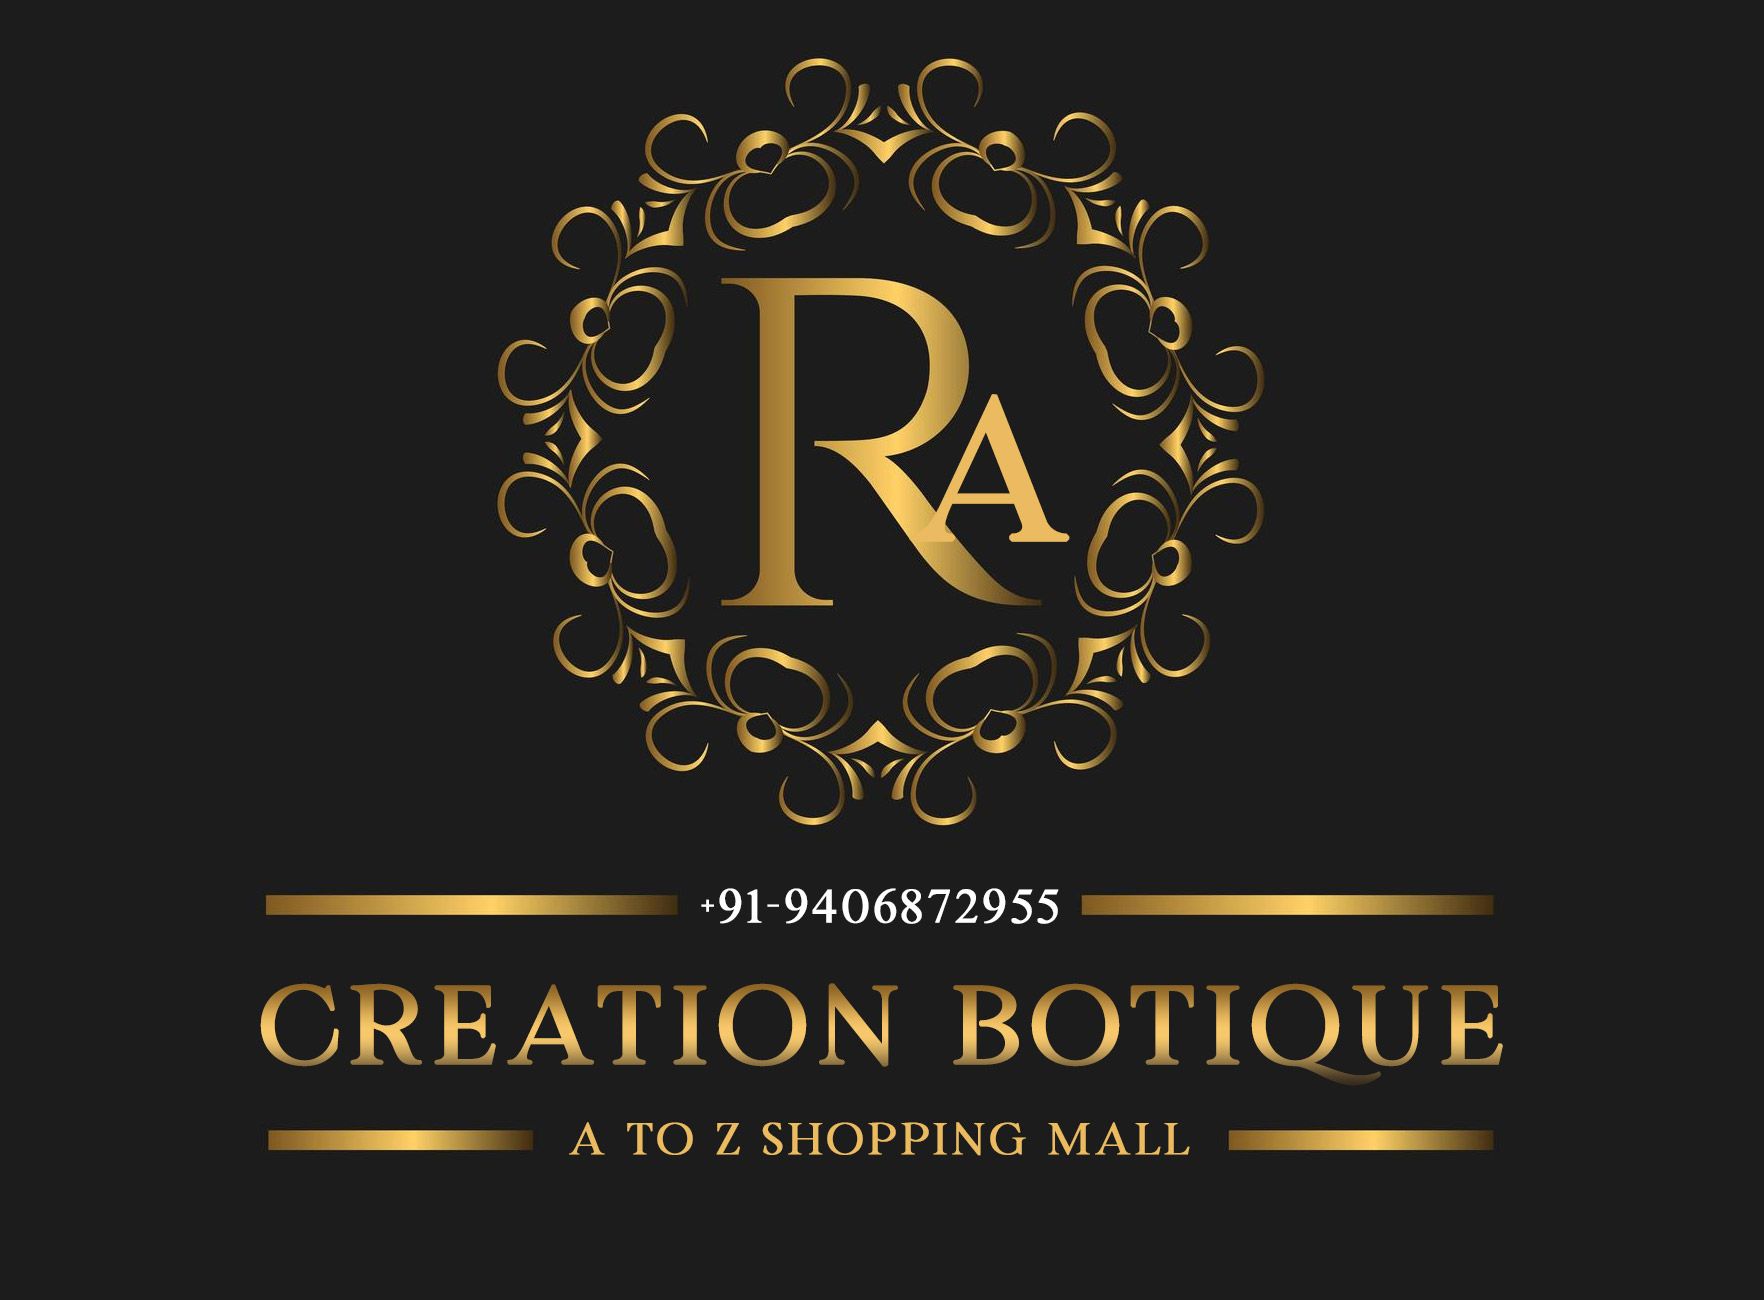 Logo Ra Creation Boutique